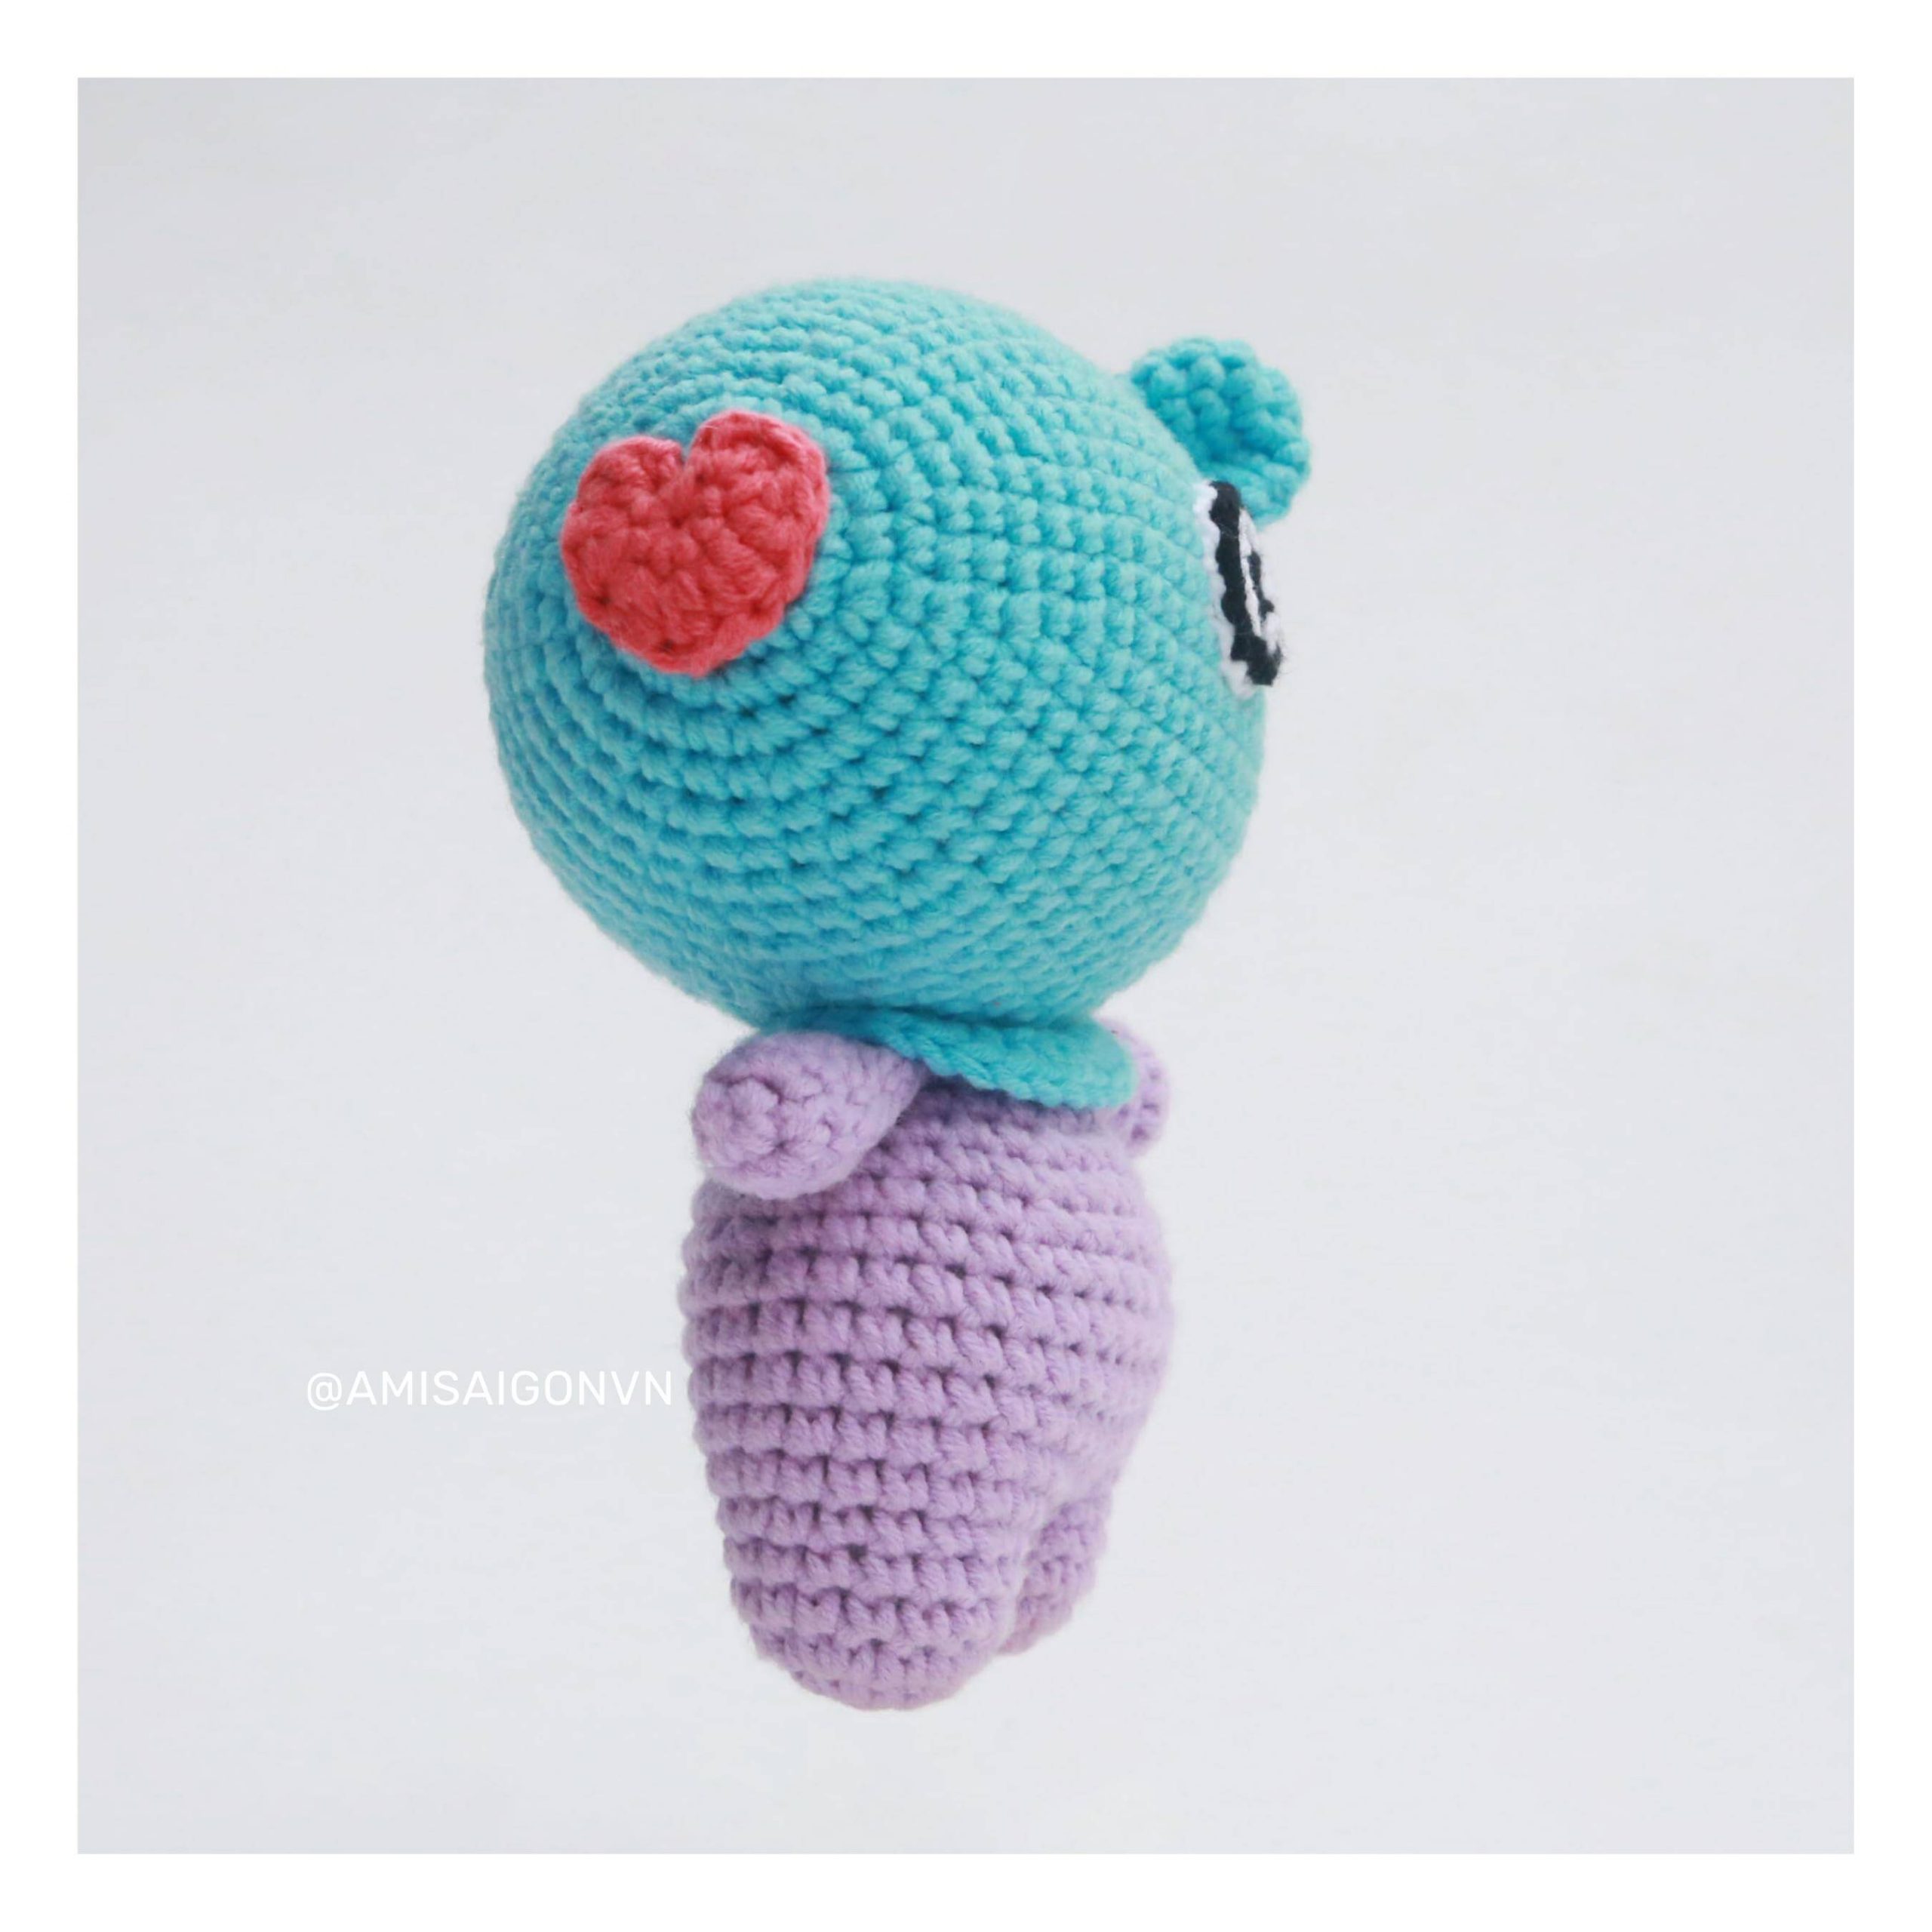 mang-amigurumi-crochet-pattern-amisaigon-bts-bt21 (9)